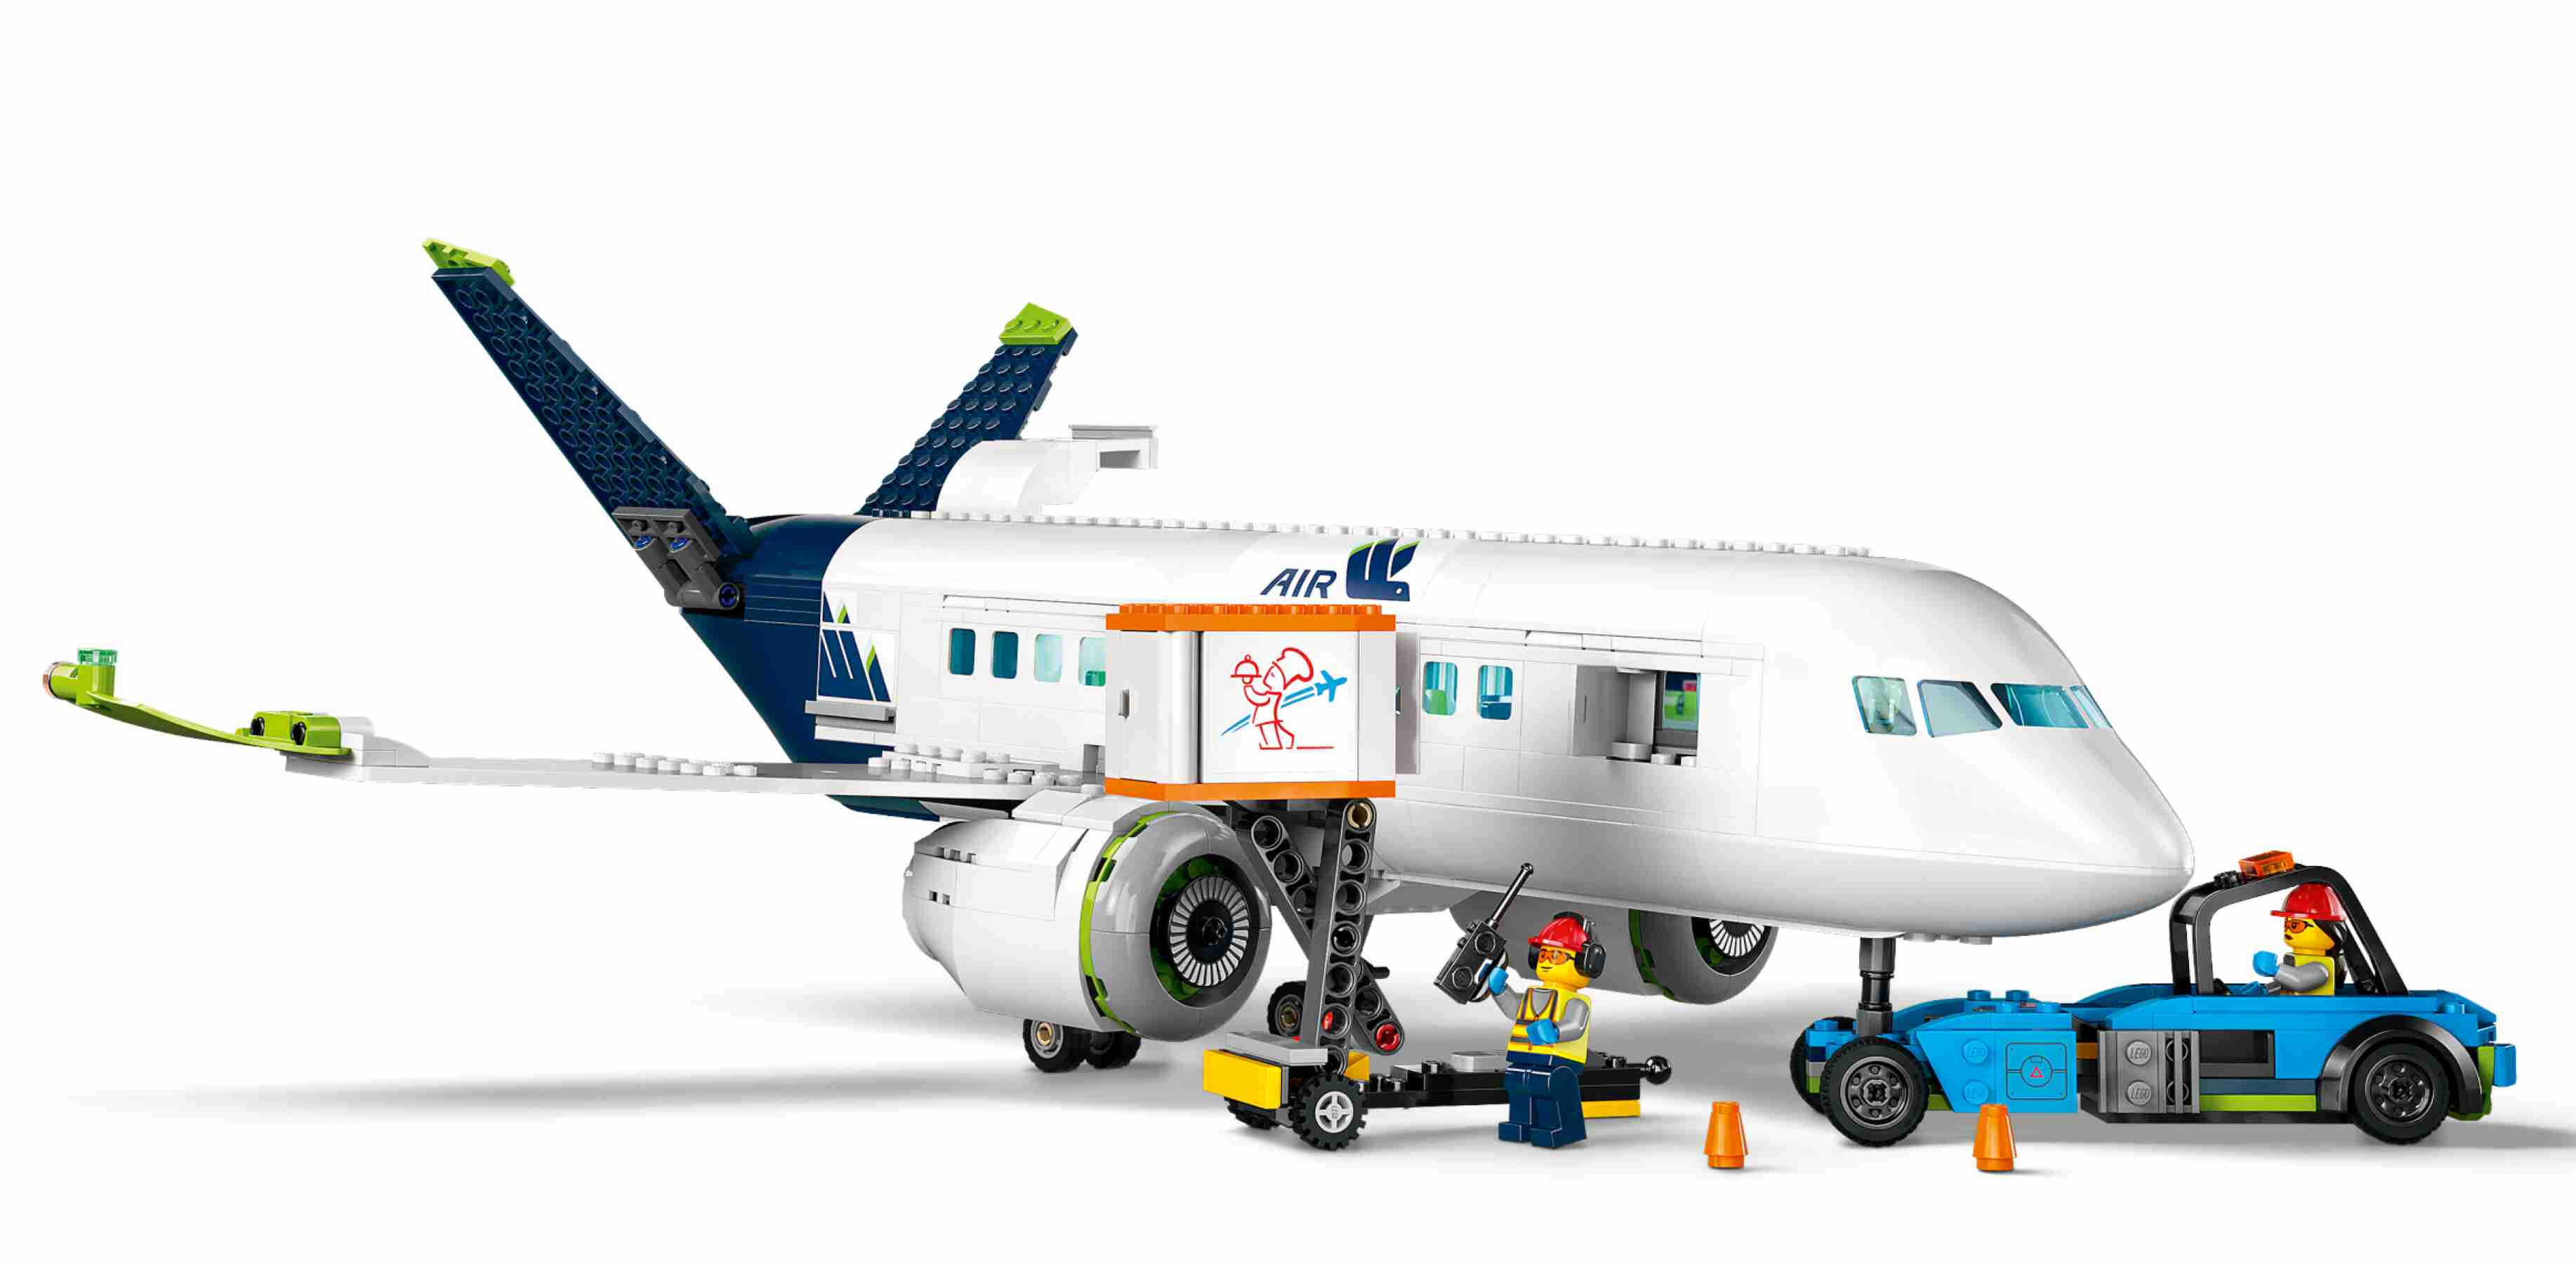 LEGO 60367 City Passagierflugzeug, detailreiches Innenleben, 9 Minifiguren 